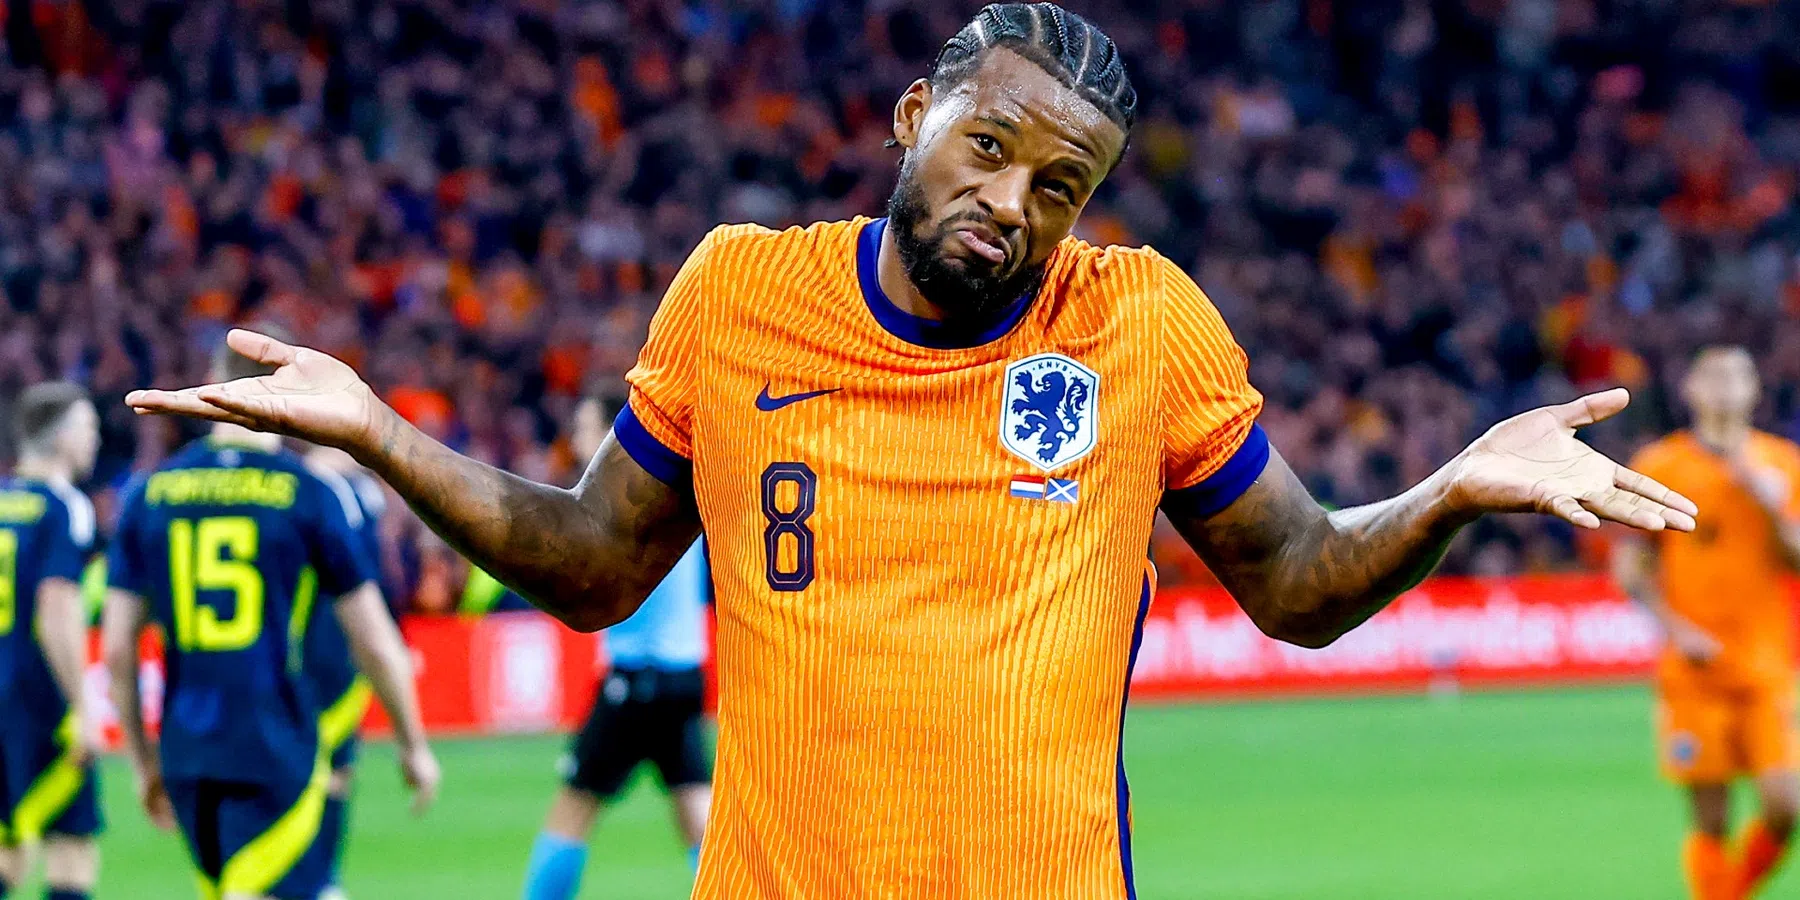 Wijnaldum noemt huidig Oranje hechter dan WK 2014